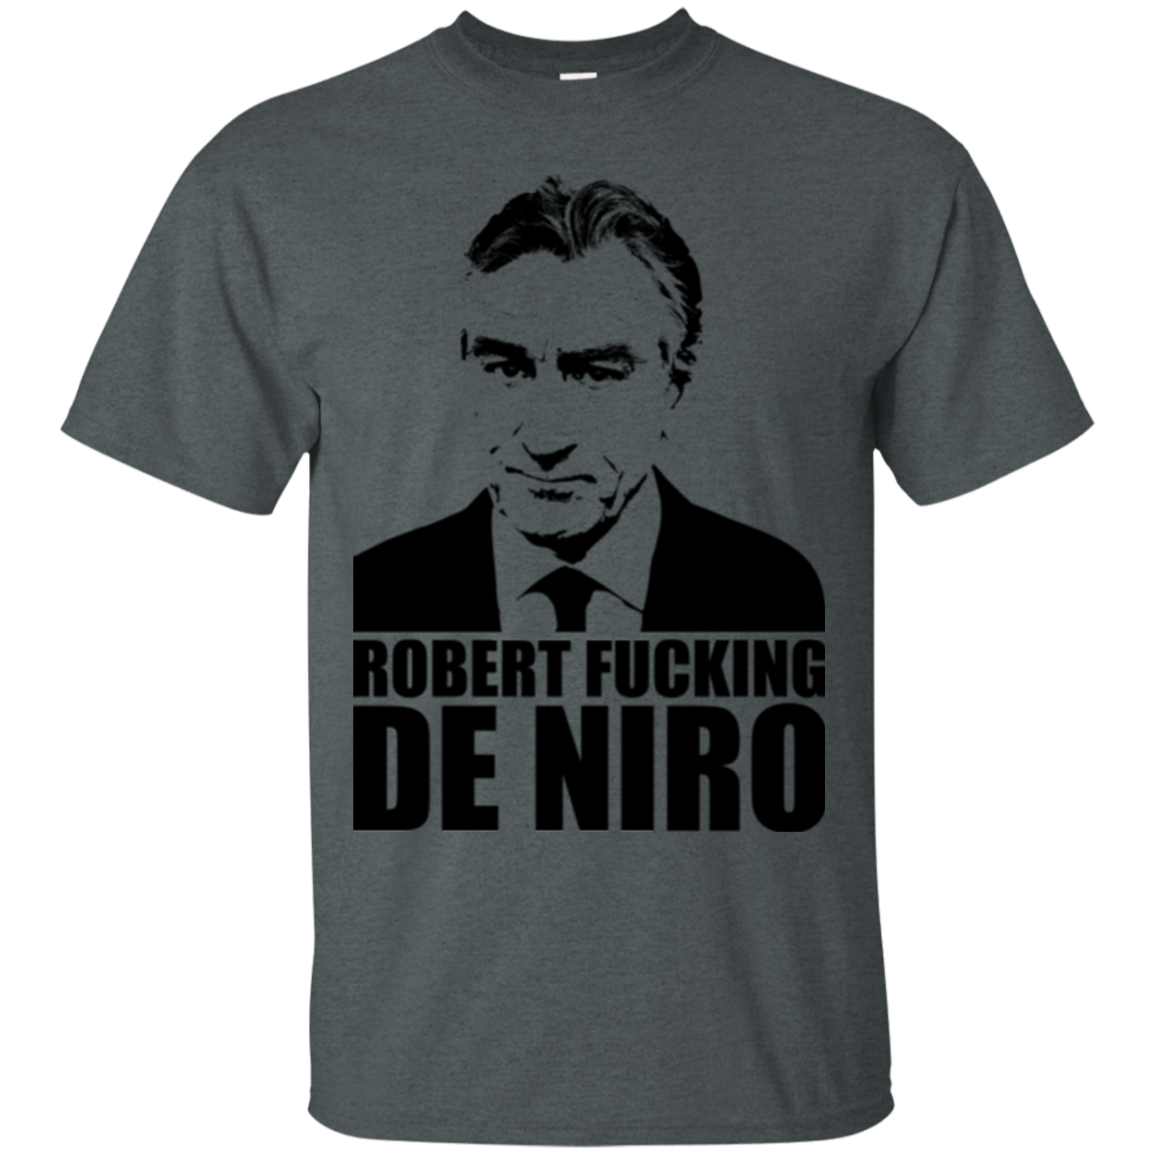 Robert Fucking DeNiro T-Shirt